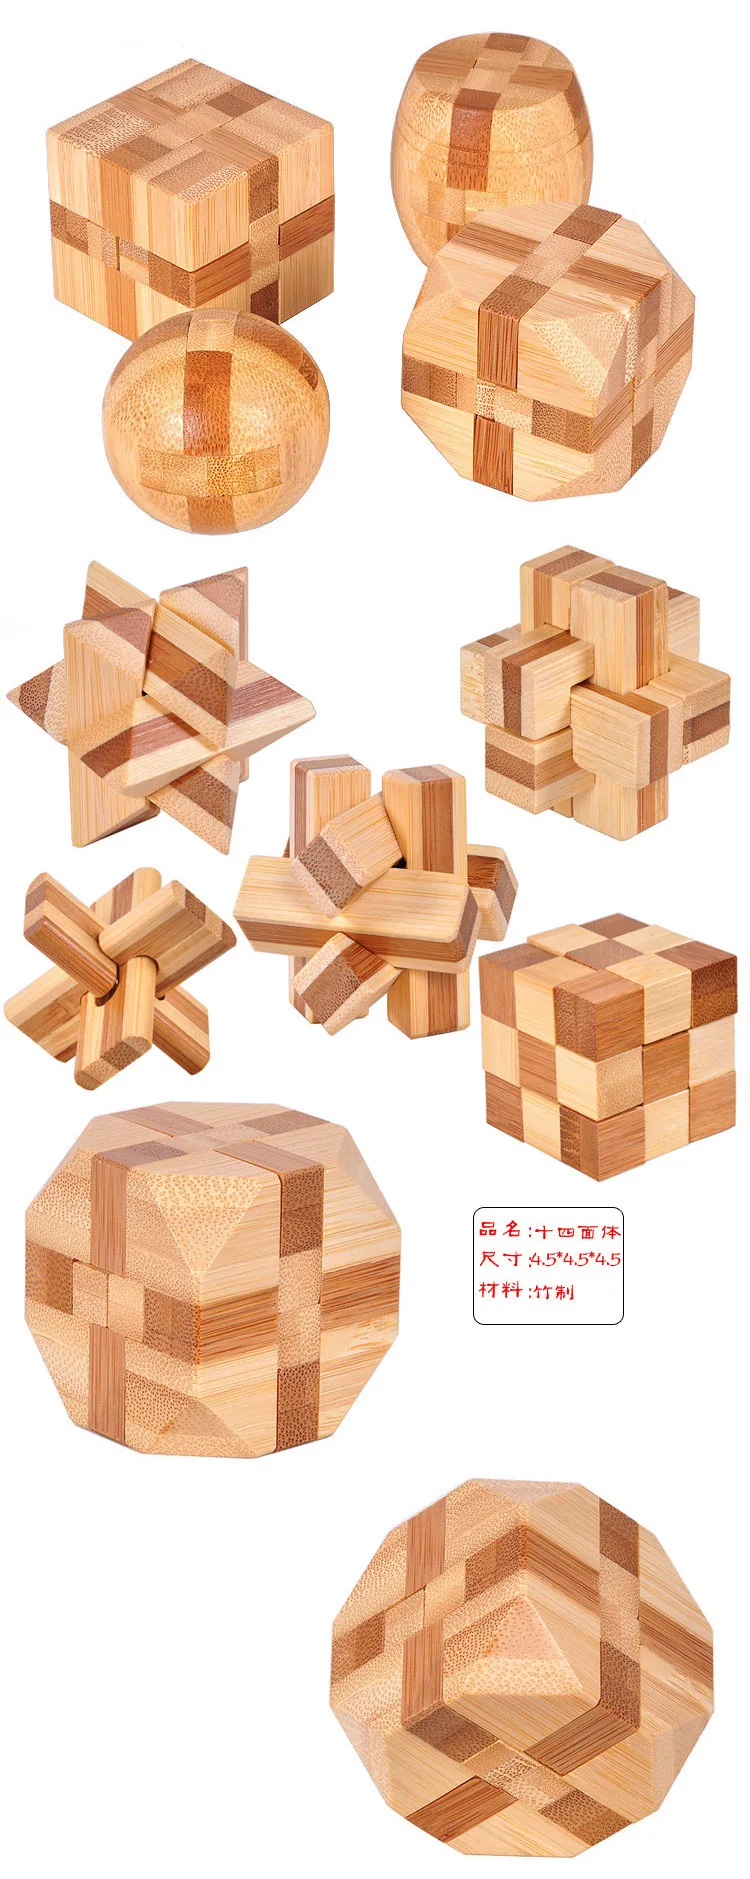 Дизайн IQ Логические Деревянный блокировка Burr 3D Дерево Паззлы игры игрушки интеллектуальной обучения Обучающие для взрослых детей